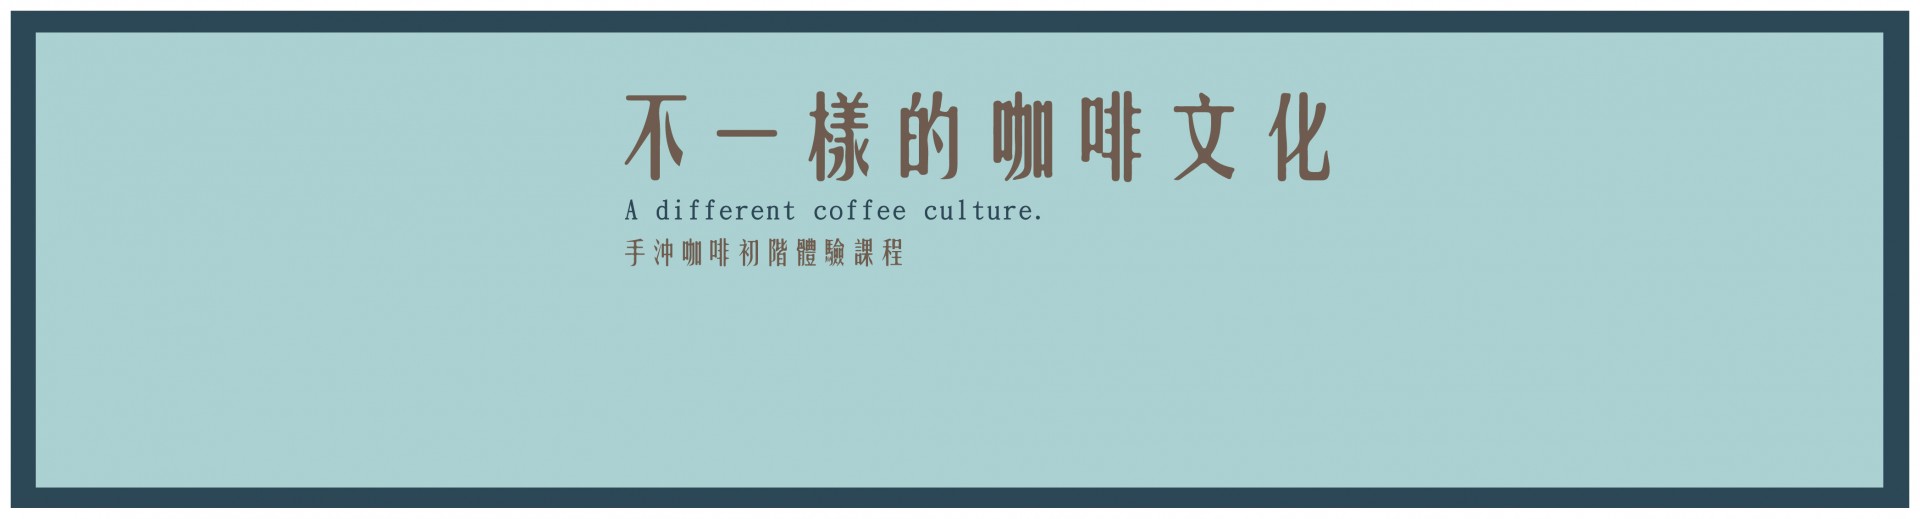 不一樣的咖啡文化-手沖咖啡初階體驗課程